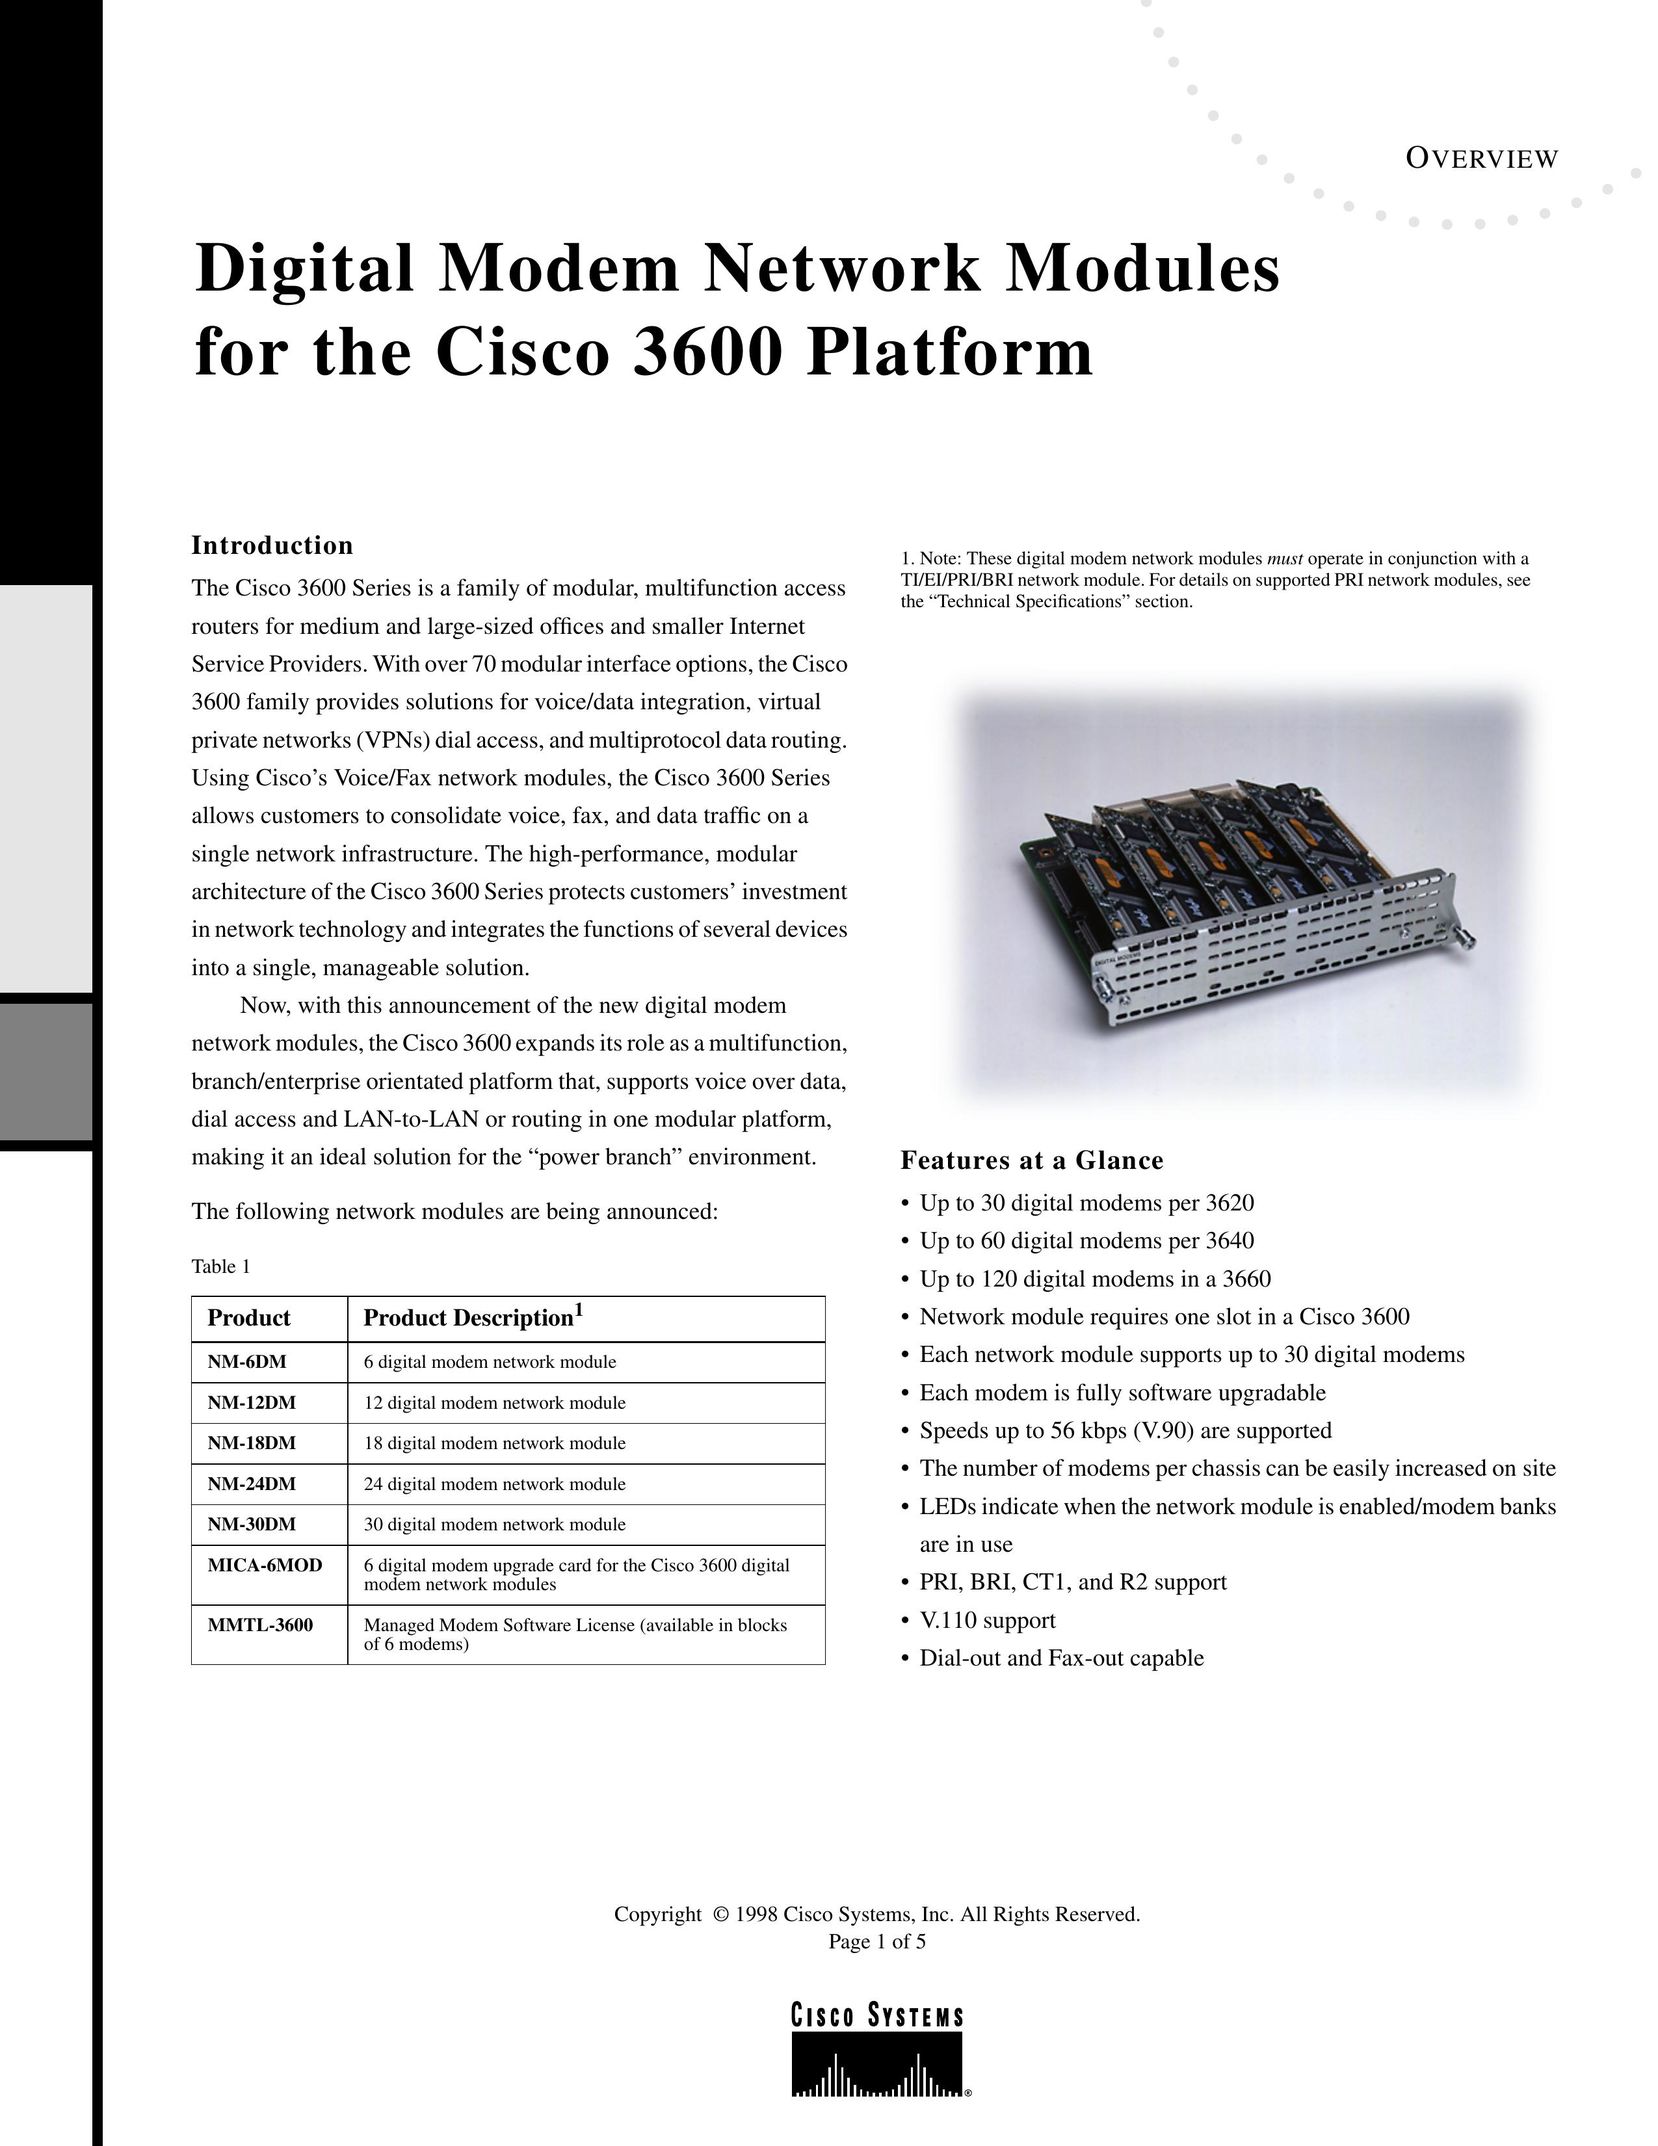 Cisco Systems NM12DM Modem User Manual